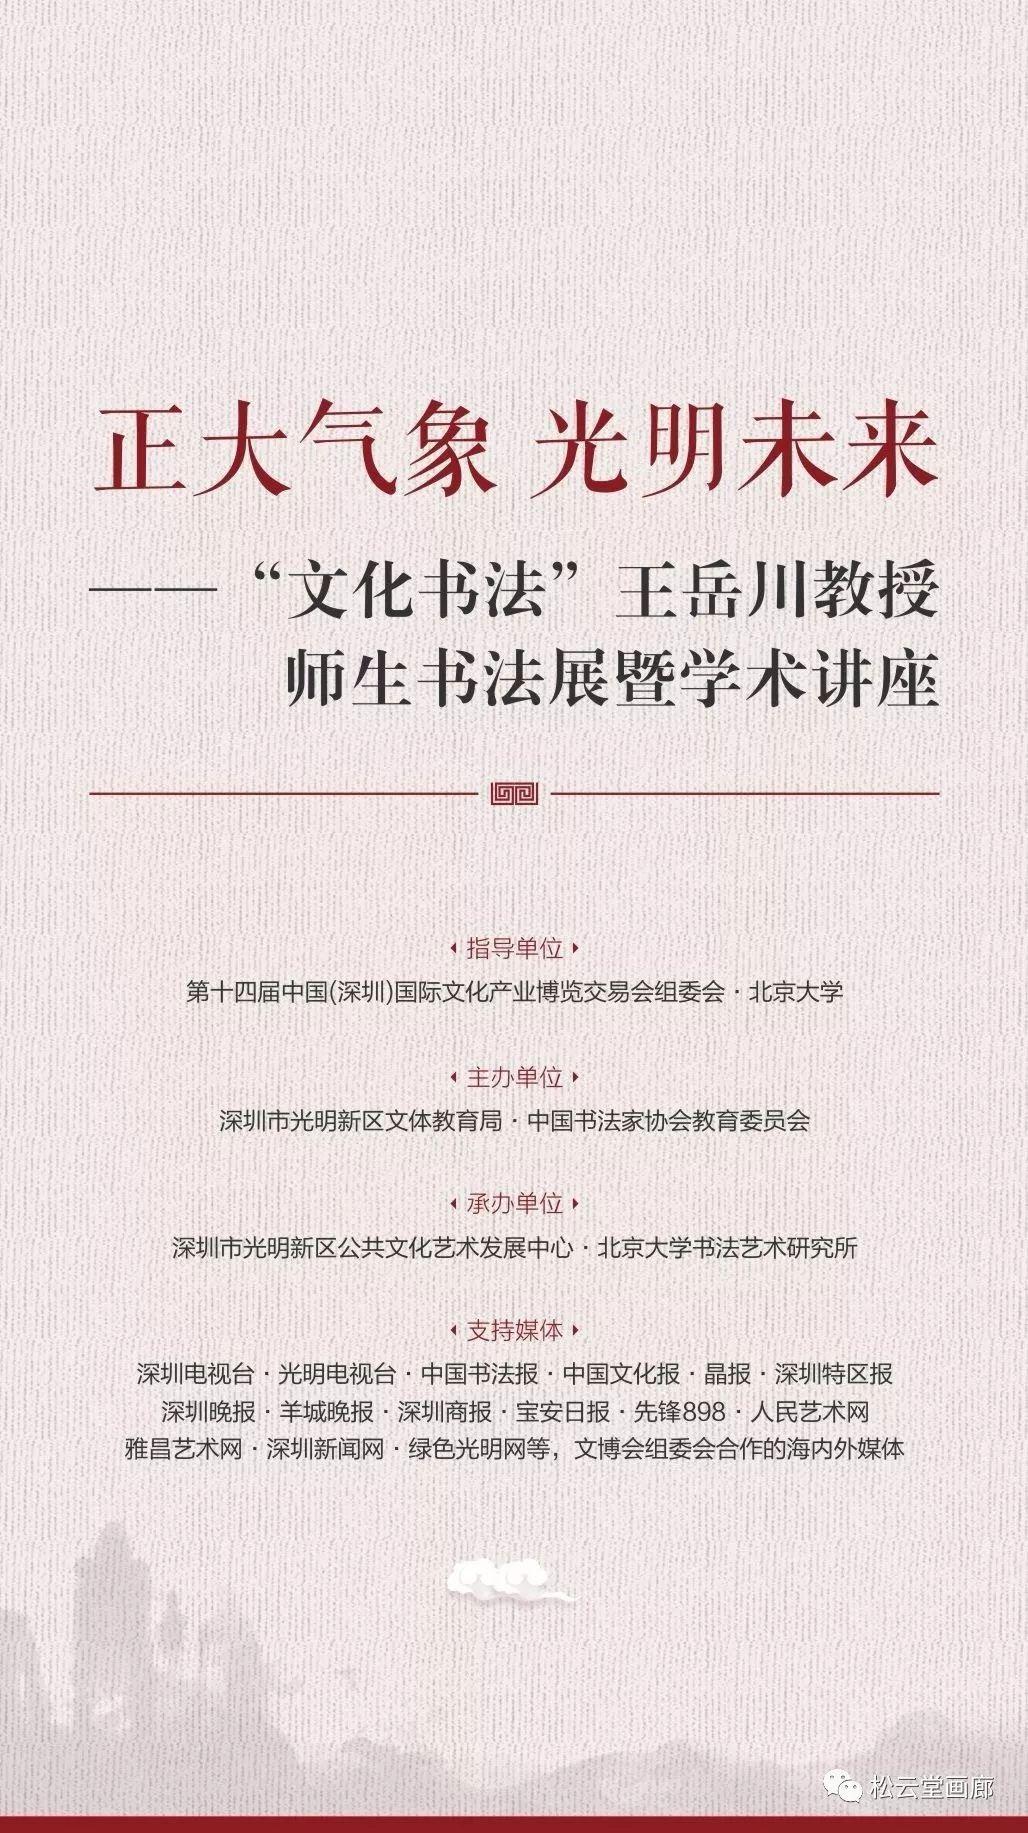 展讯 | “文化书法”王岳川教授师生书法展暨学术讲座